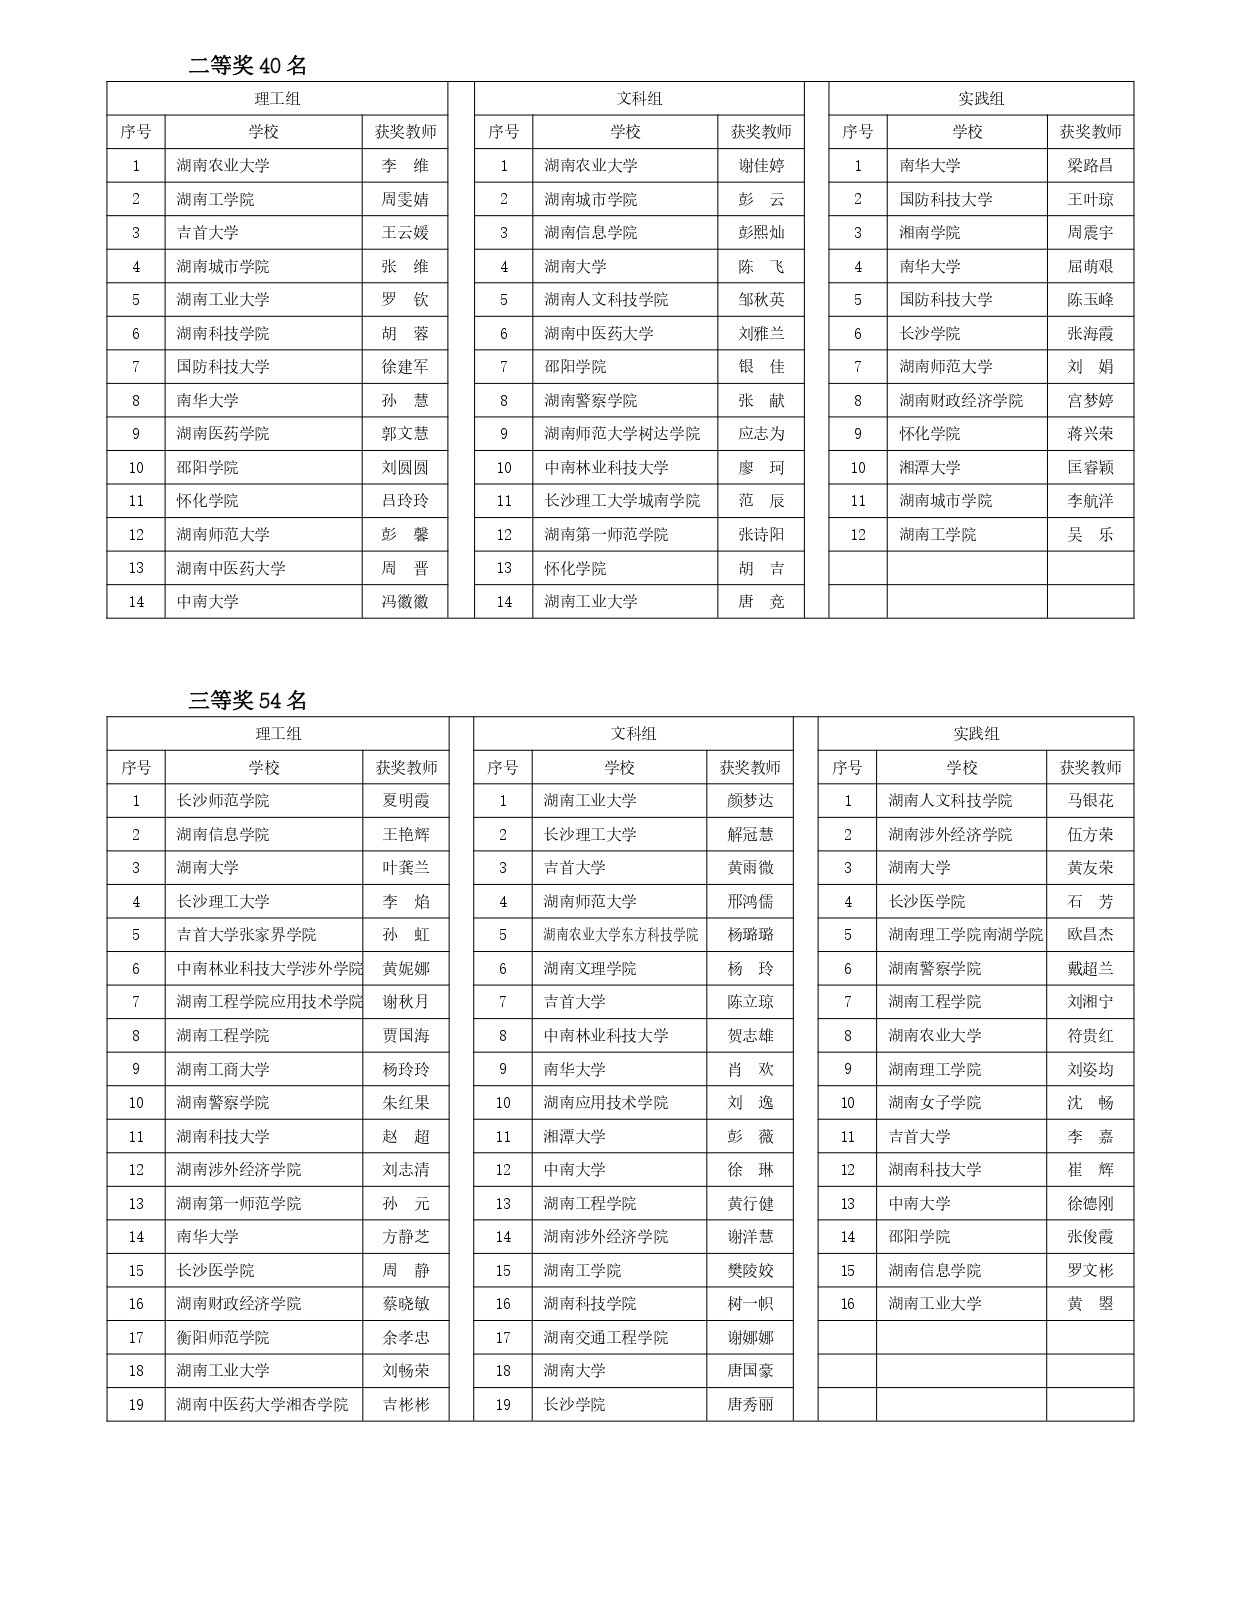 2022年湖南省高校教师信息化教学竞赛结果公示_page-0002.jpg